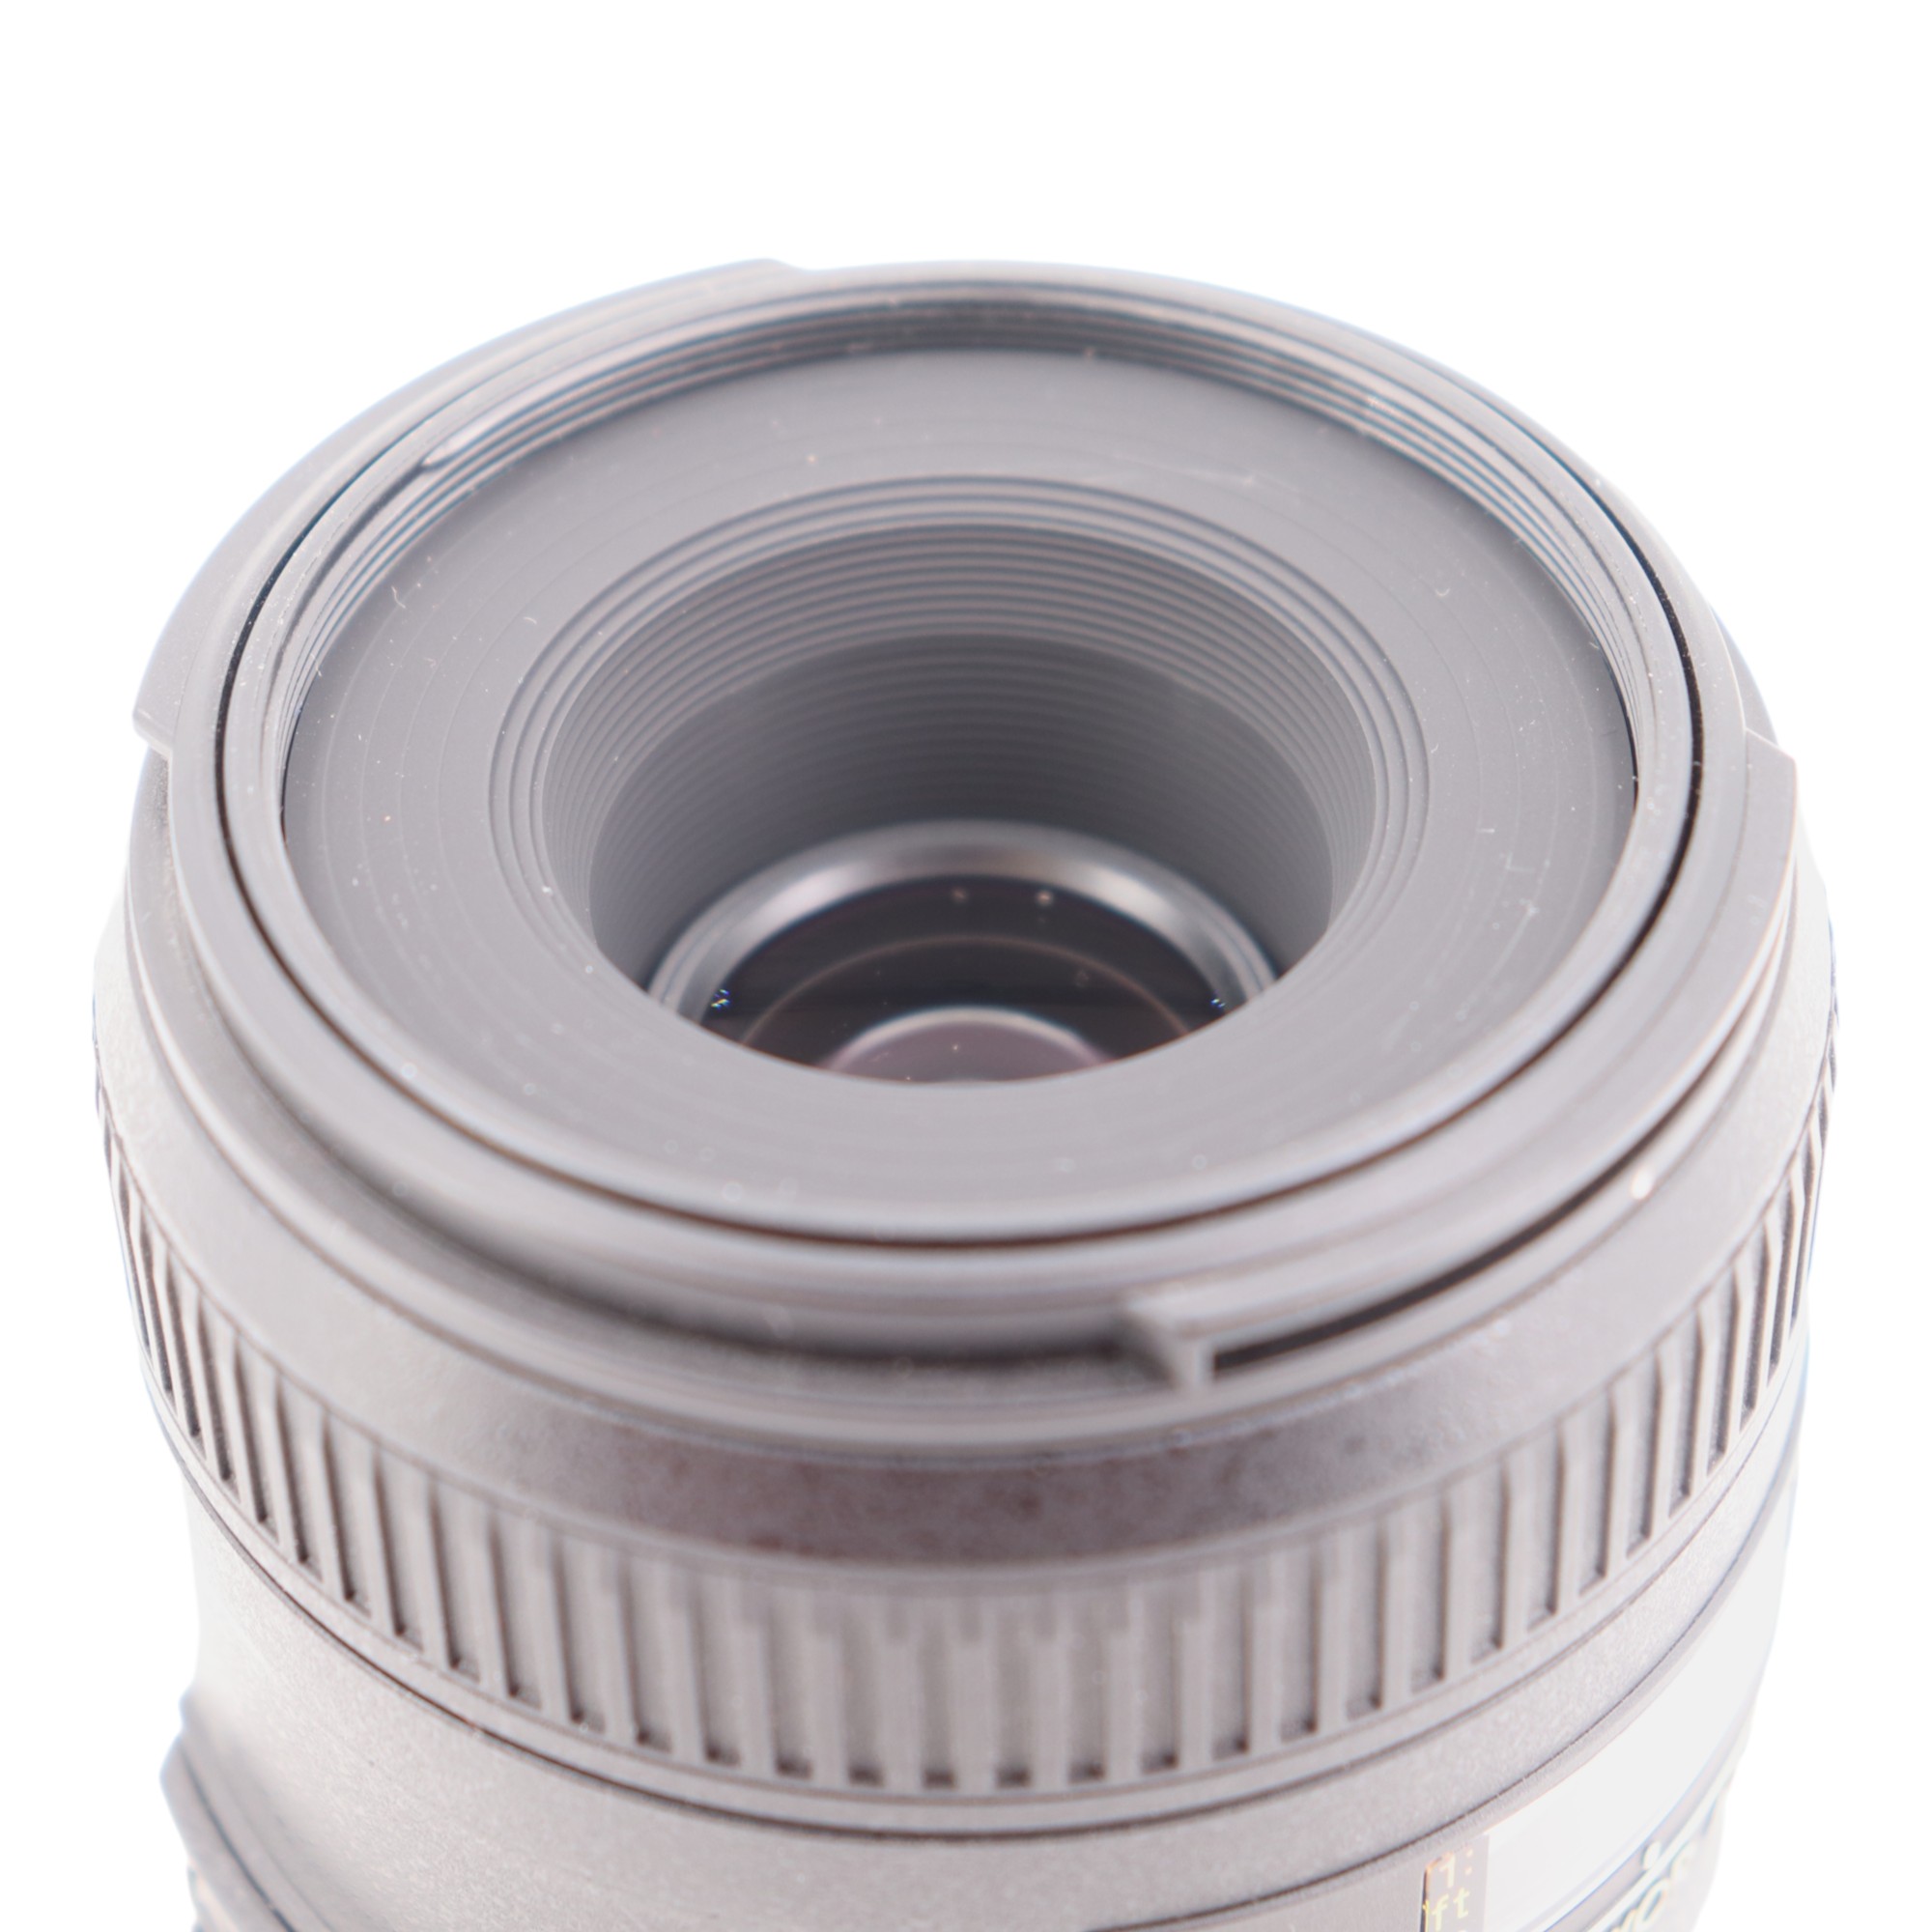 A Nikon AF-S Macro Nikkor 40mm 1:2.8 G camera lens - Image 10 of 10